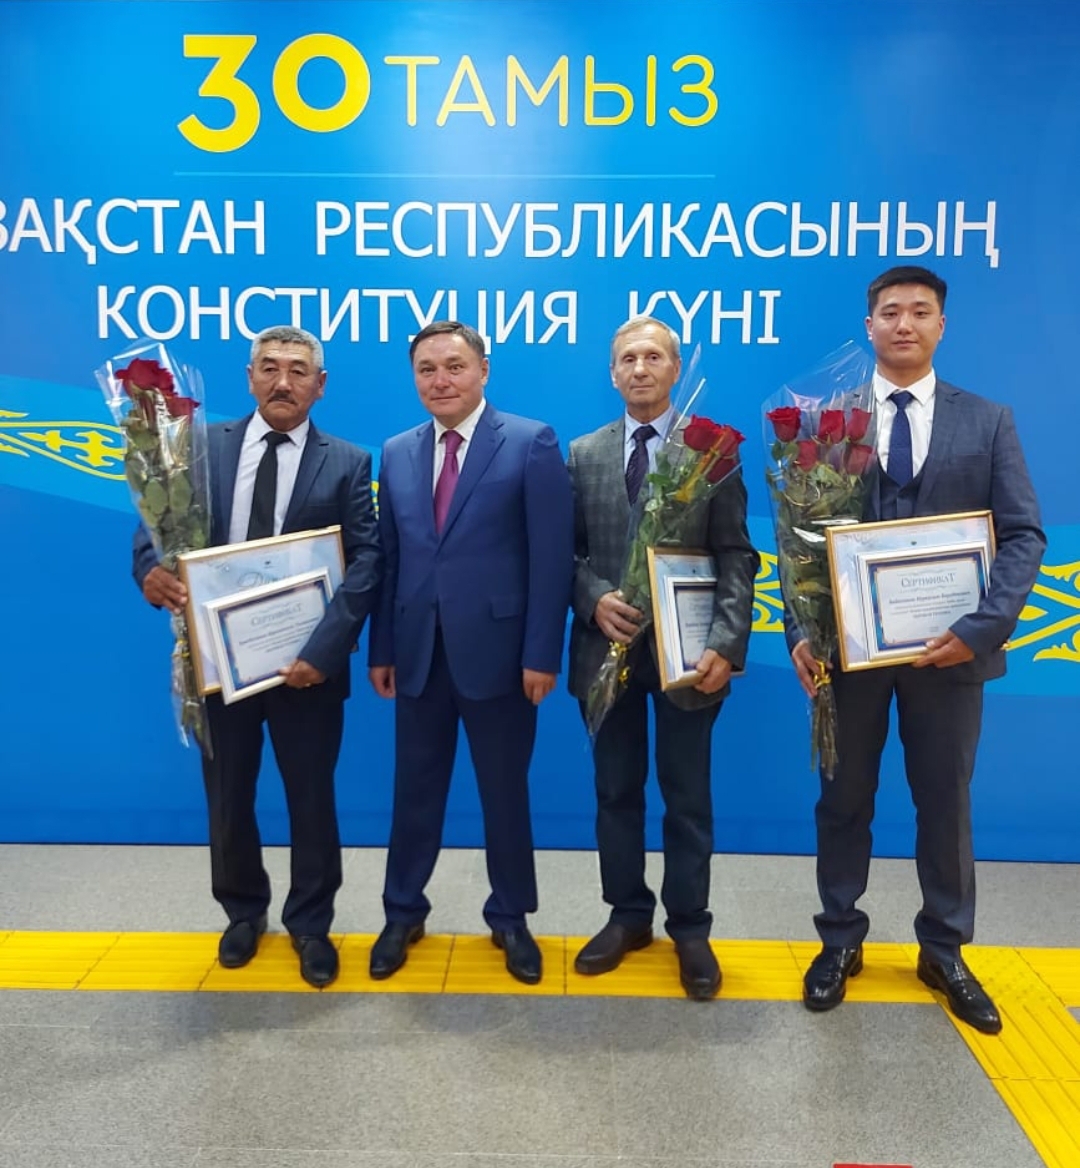 Итоги проведения конкурса «Еңбек жолы» 2022 года